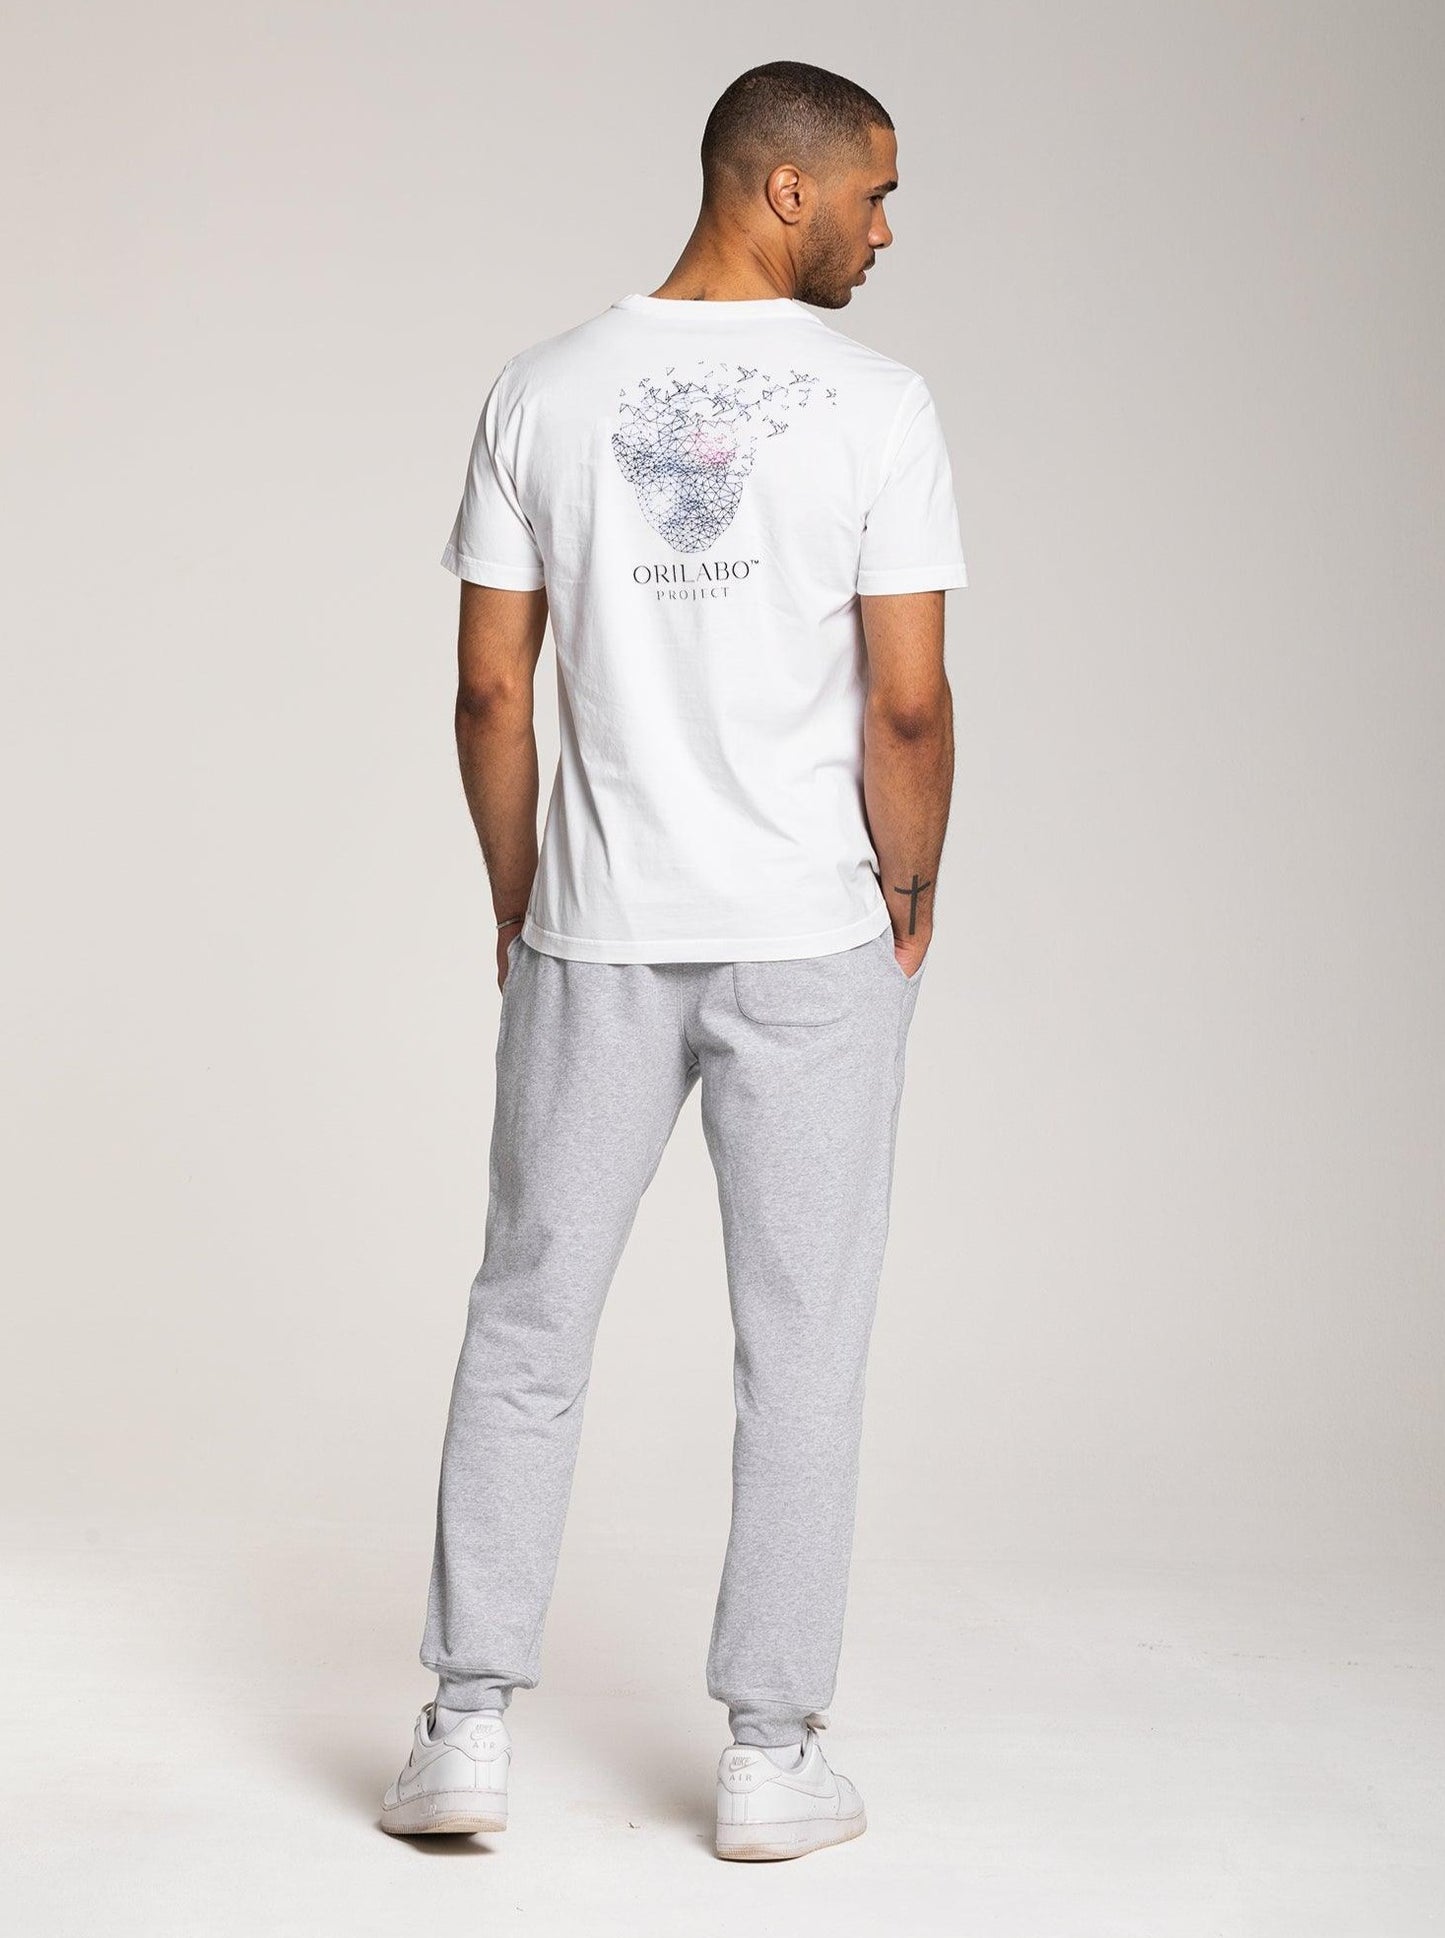 
                  
                    Men's Flying Head T-shirt - White - ORILABO Project
                  
                